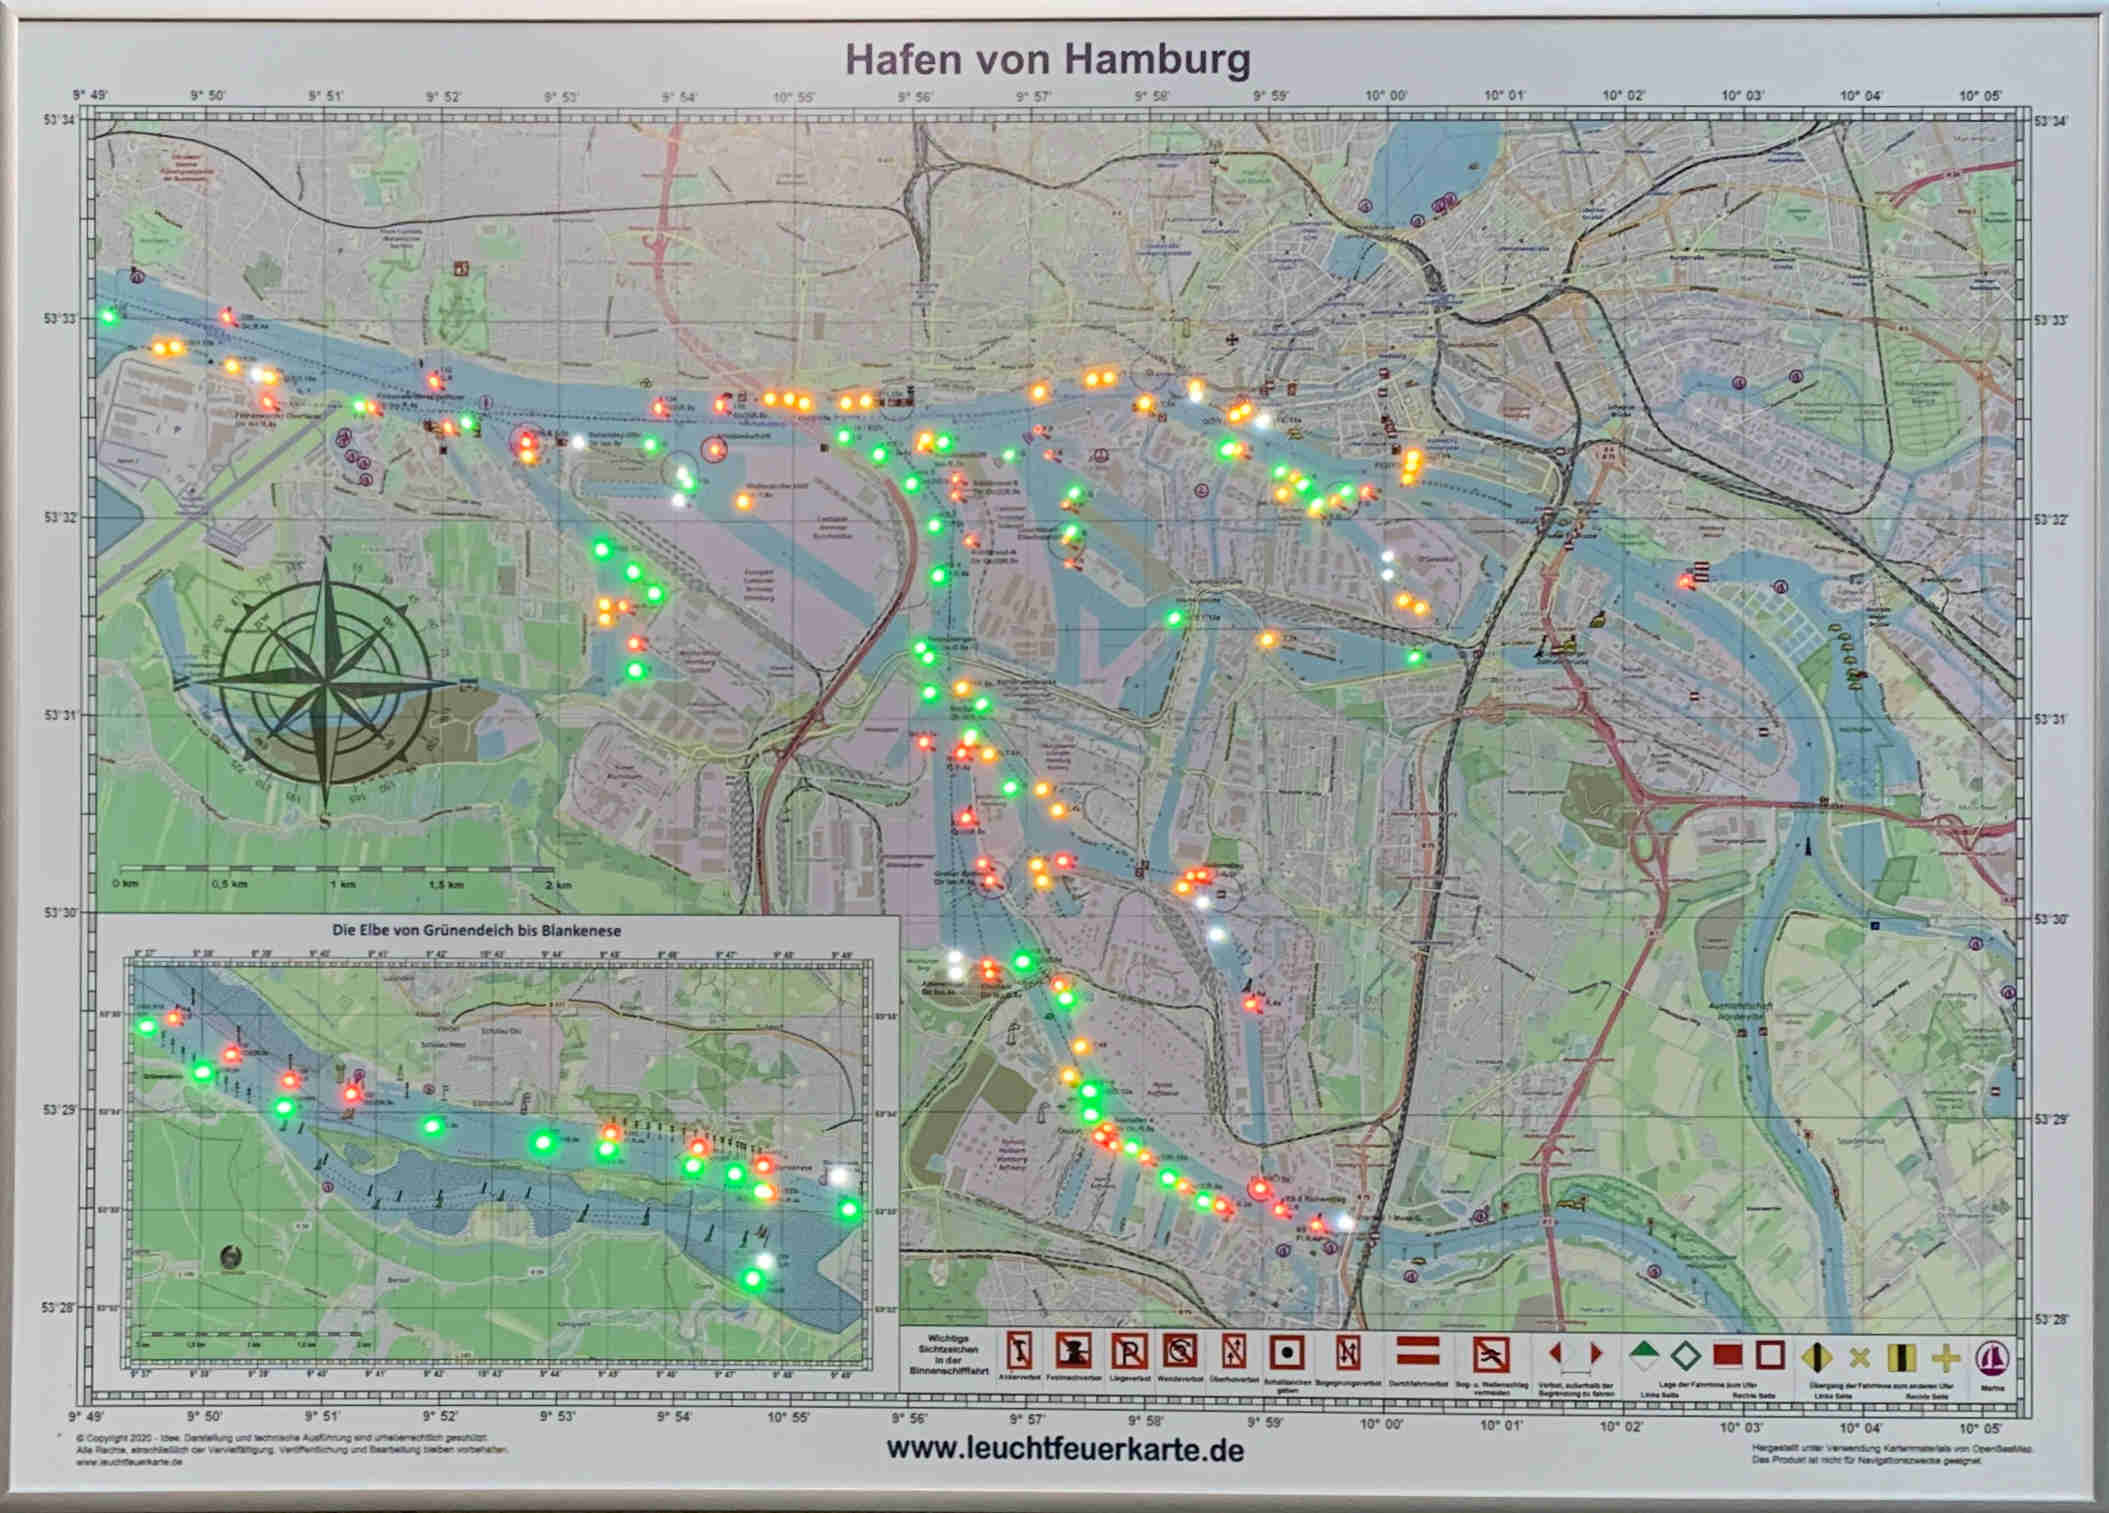 Leuchtfeuerkarte "Hafen von Hamburg"